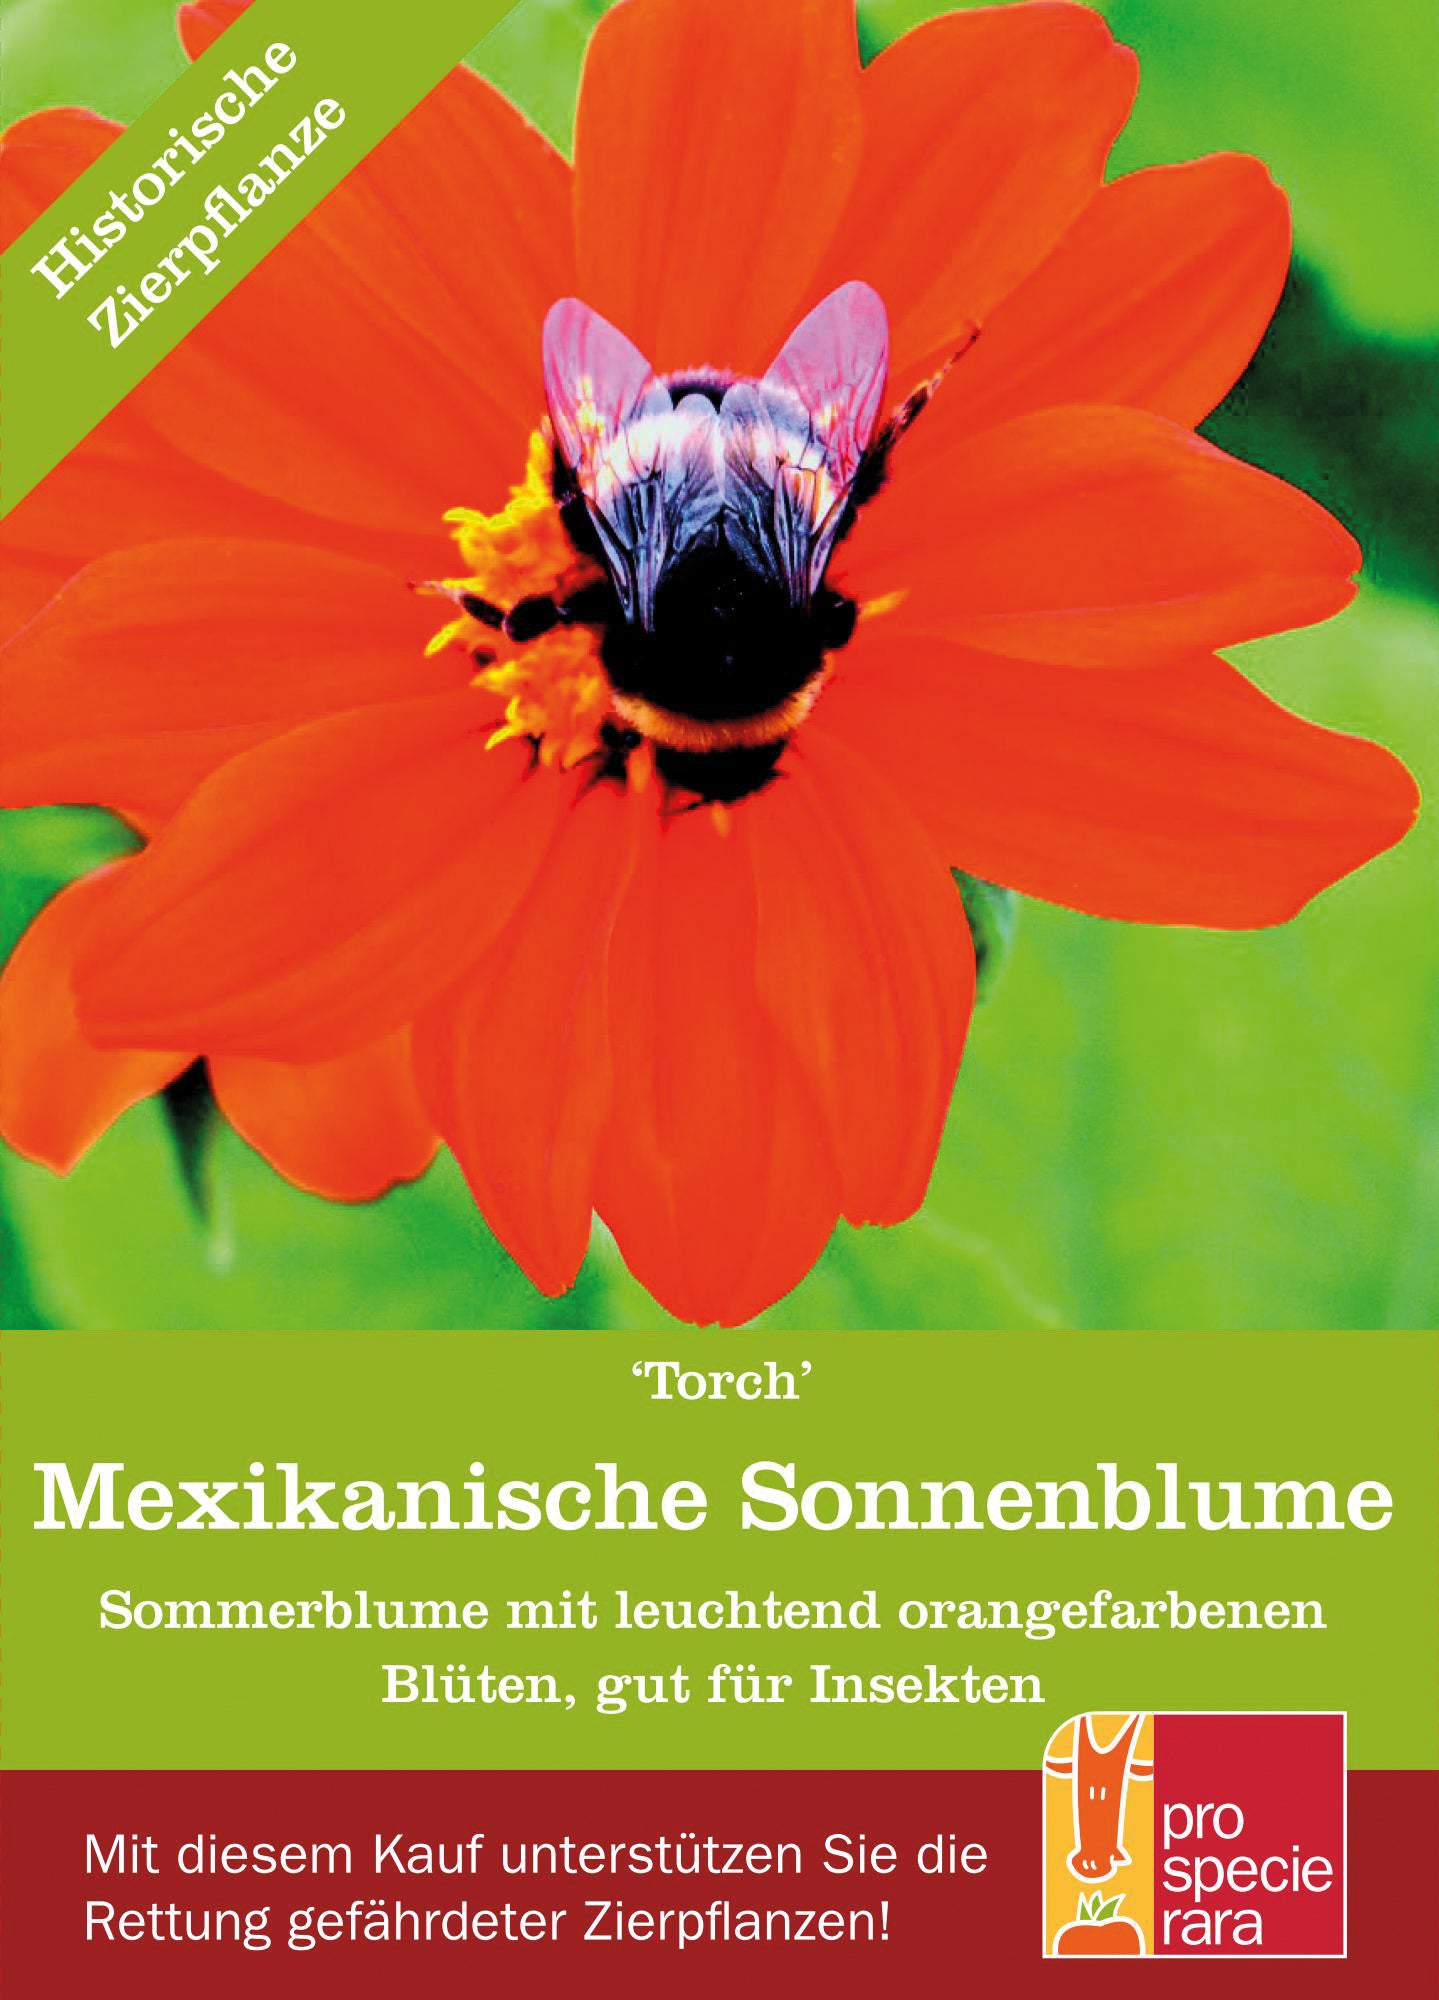 Mexikanische Sonnenblume Torch | BIO Sonnenblumensamen von ProSpecieRara